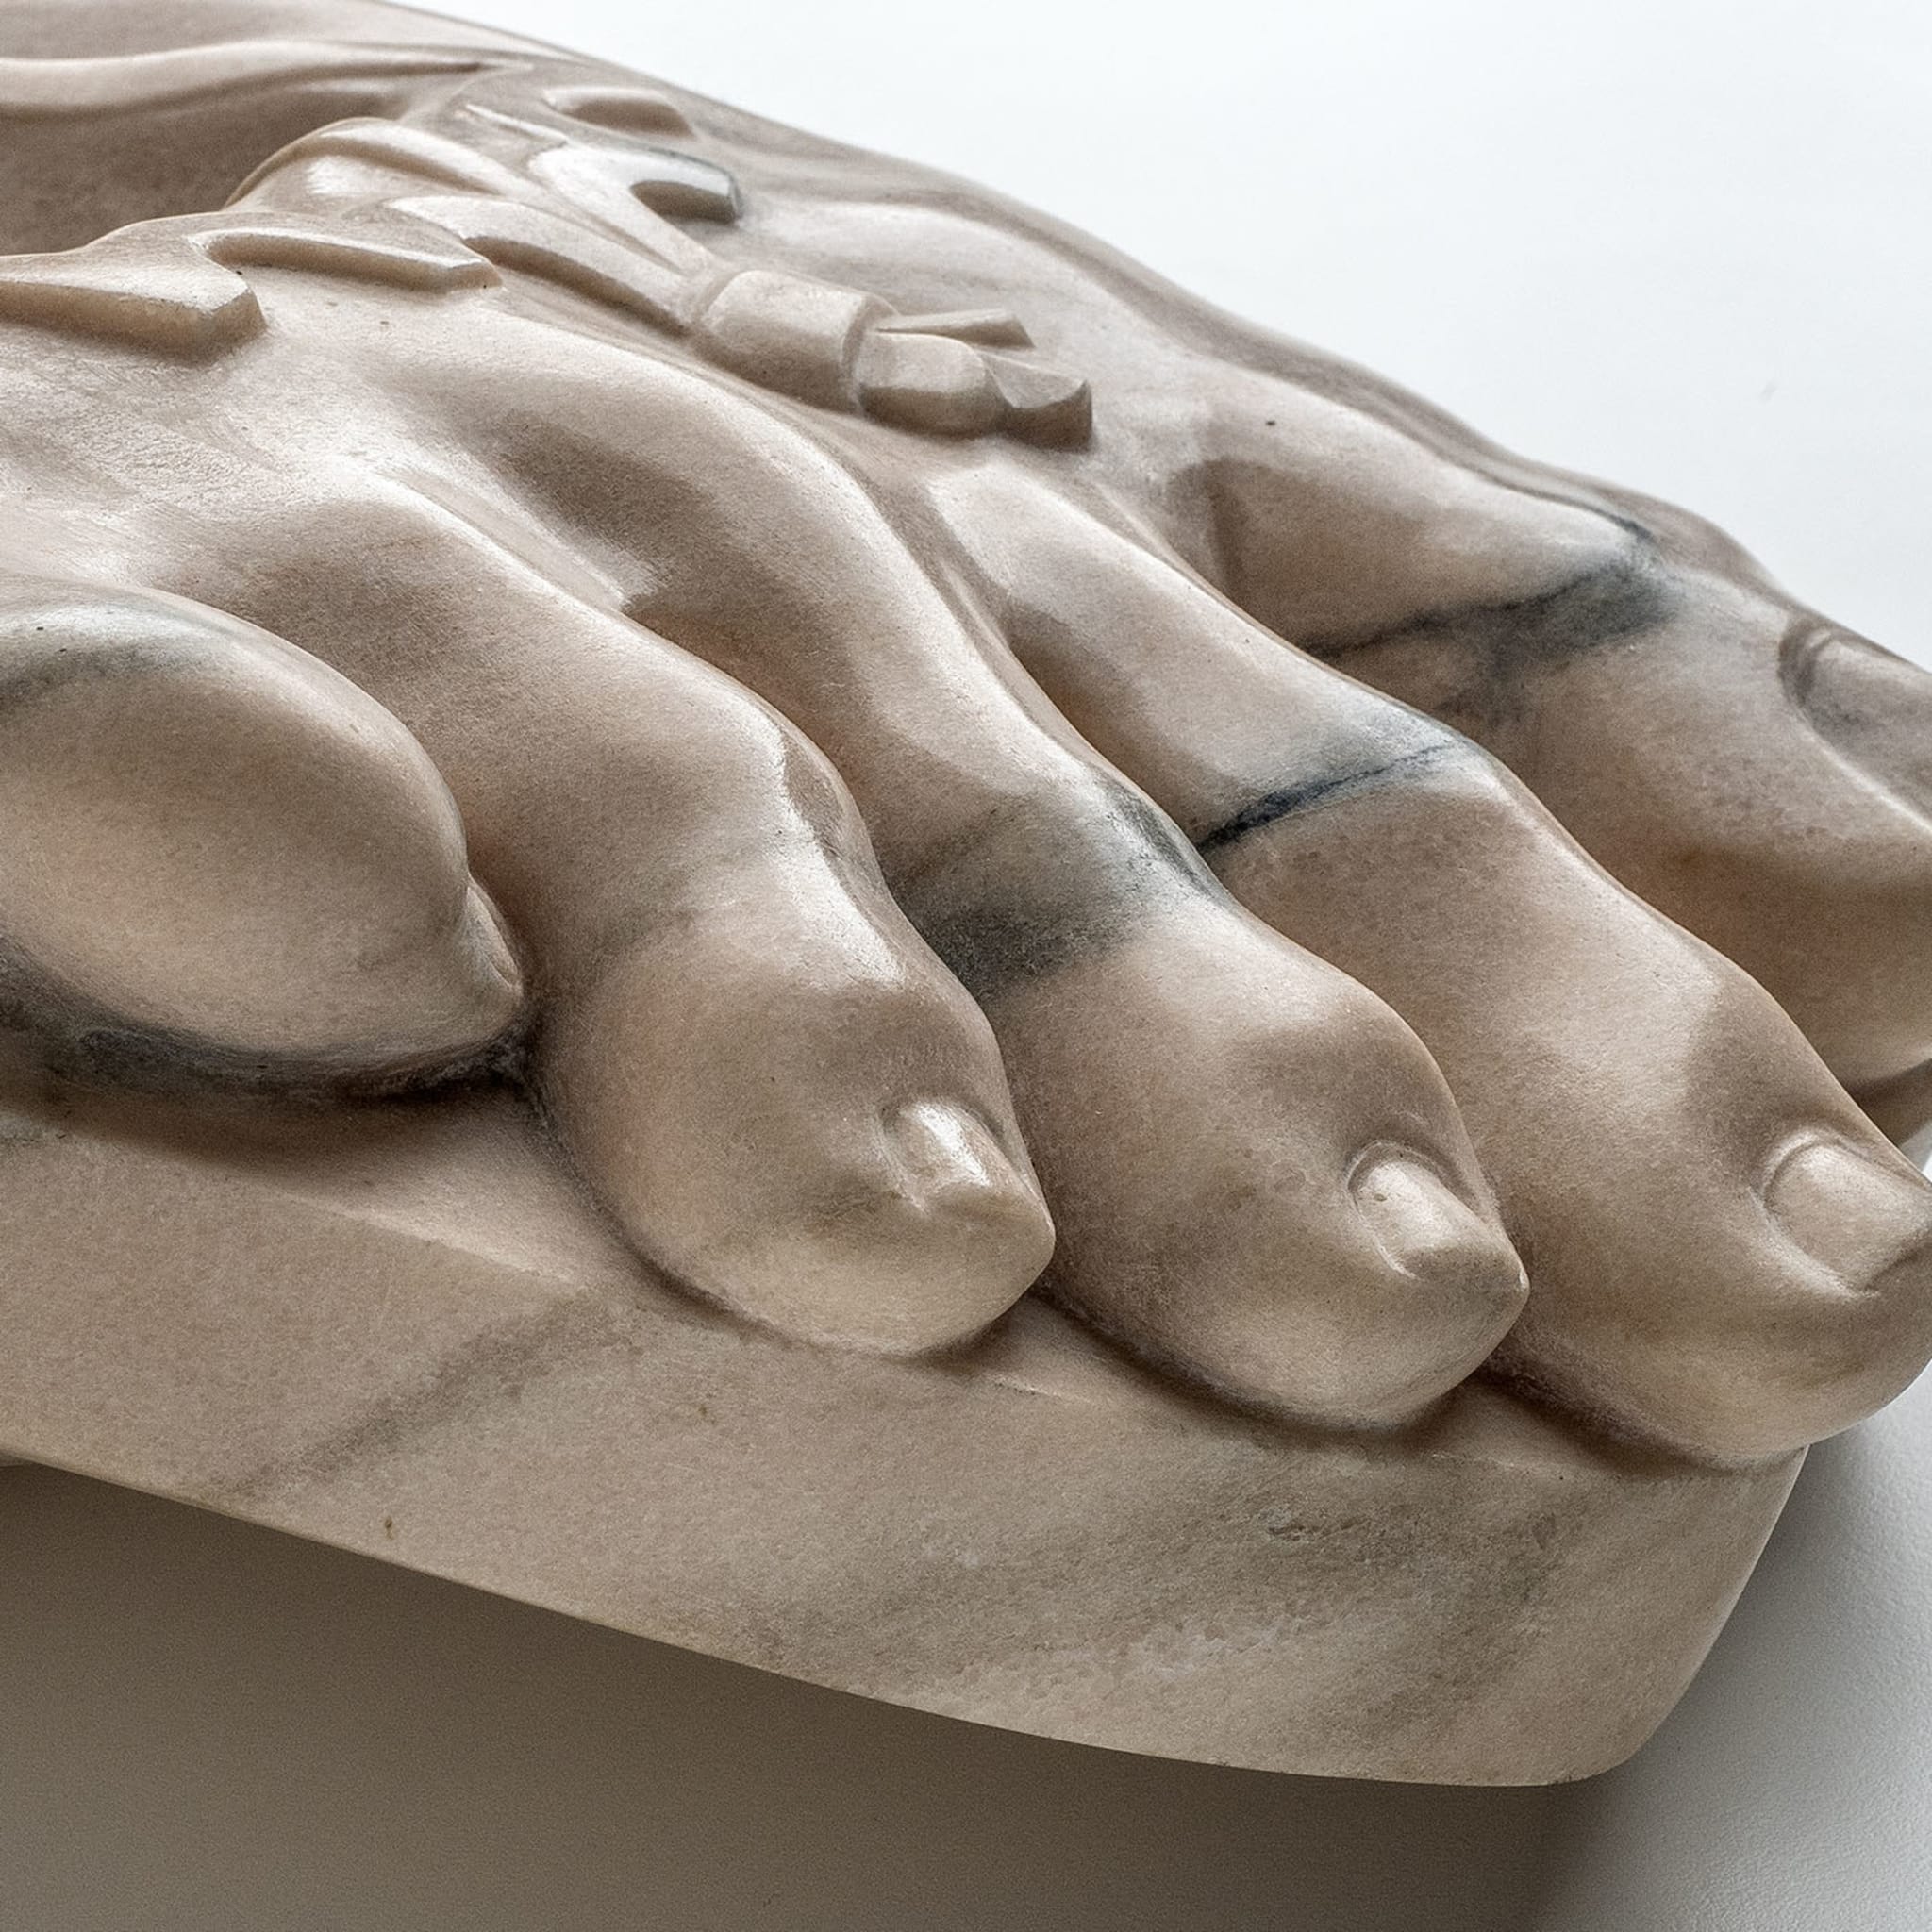 Rubber Hermes Foot Sculpture - Alternative view 1